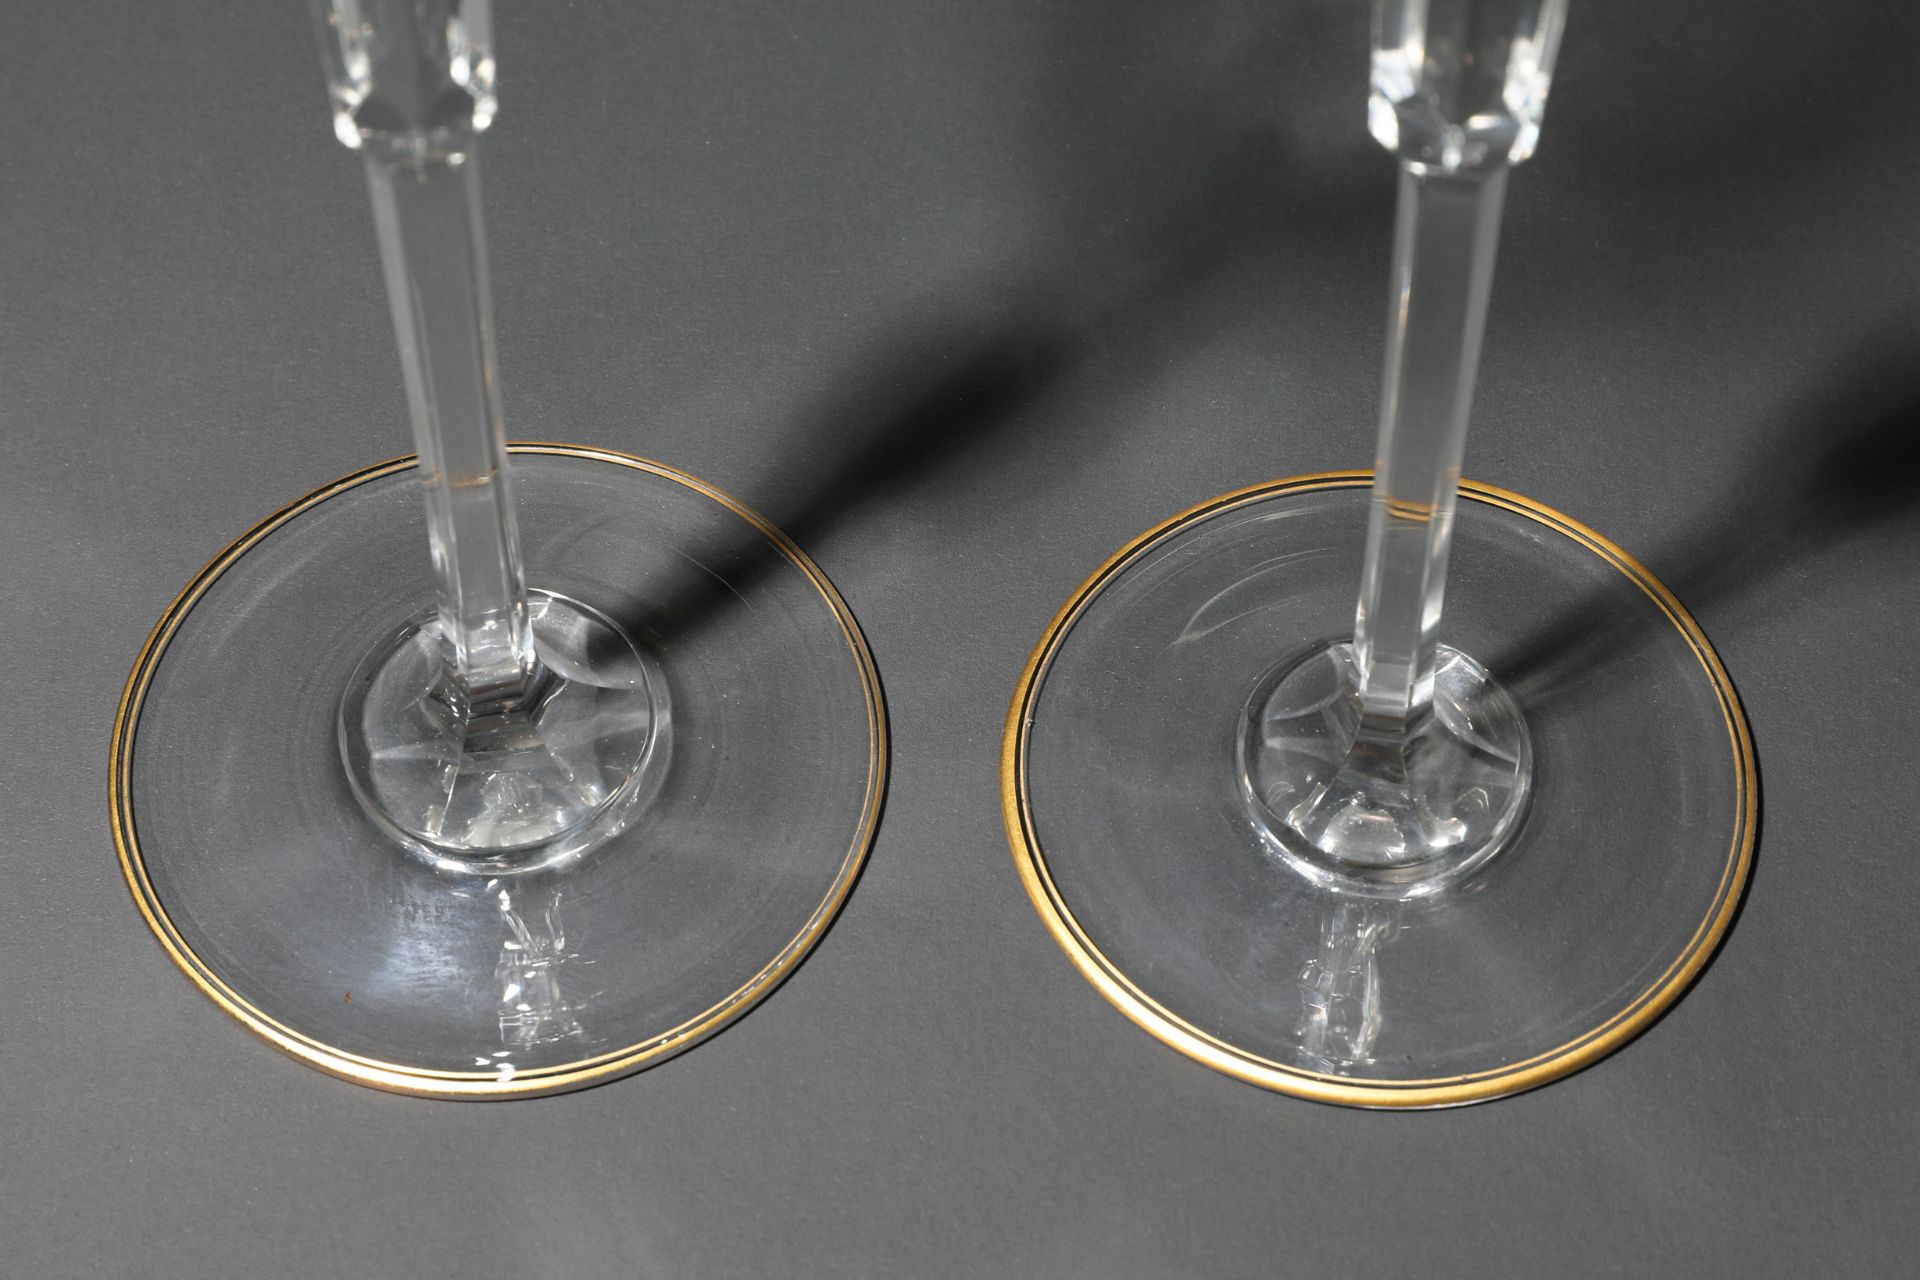 Siegfried Haertel, Josephinenhütte, 2 wine glasses shape 989 - Image 5 of 6